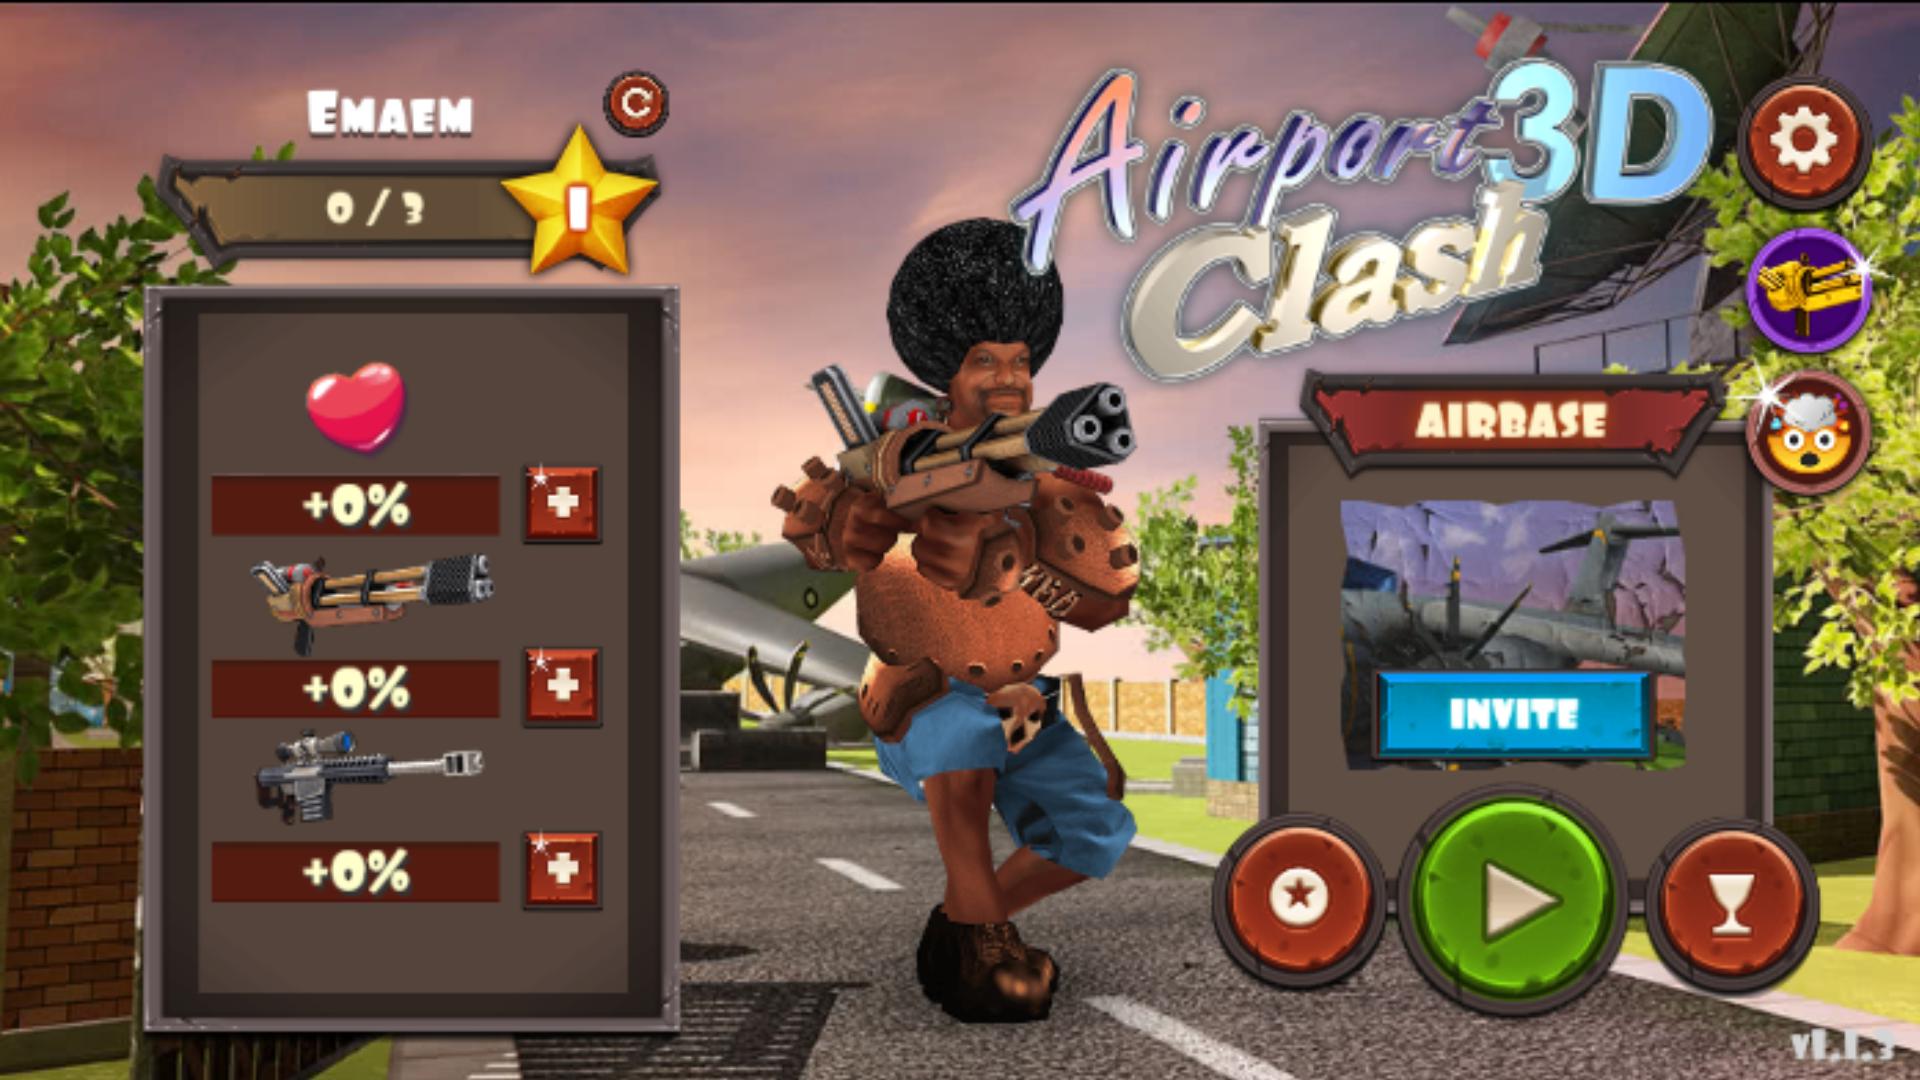 Rocket Clash 3D Third person shooter multiplayer 1.3.14 Screenshot 8